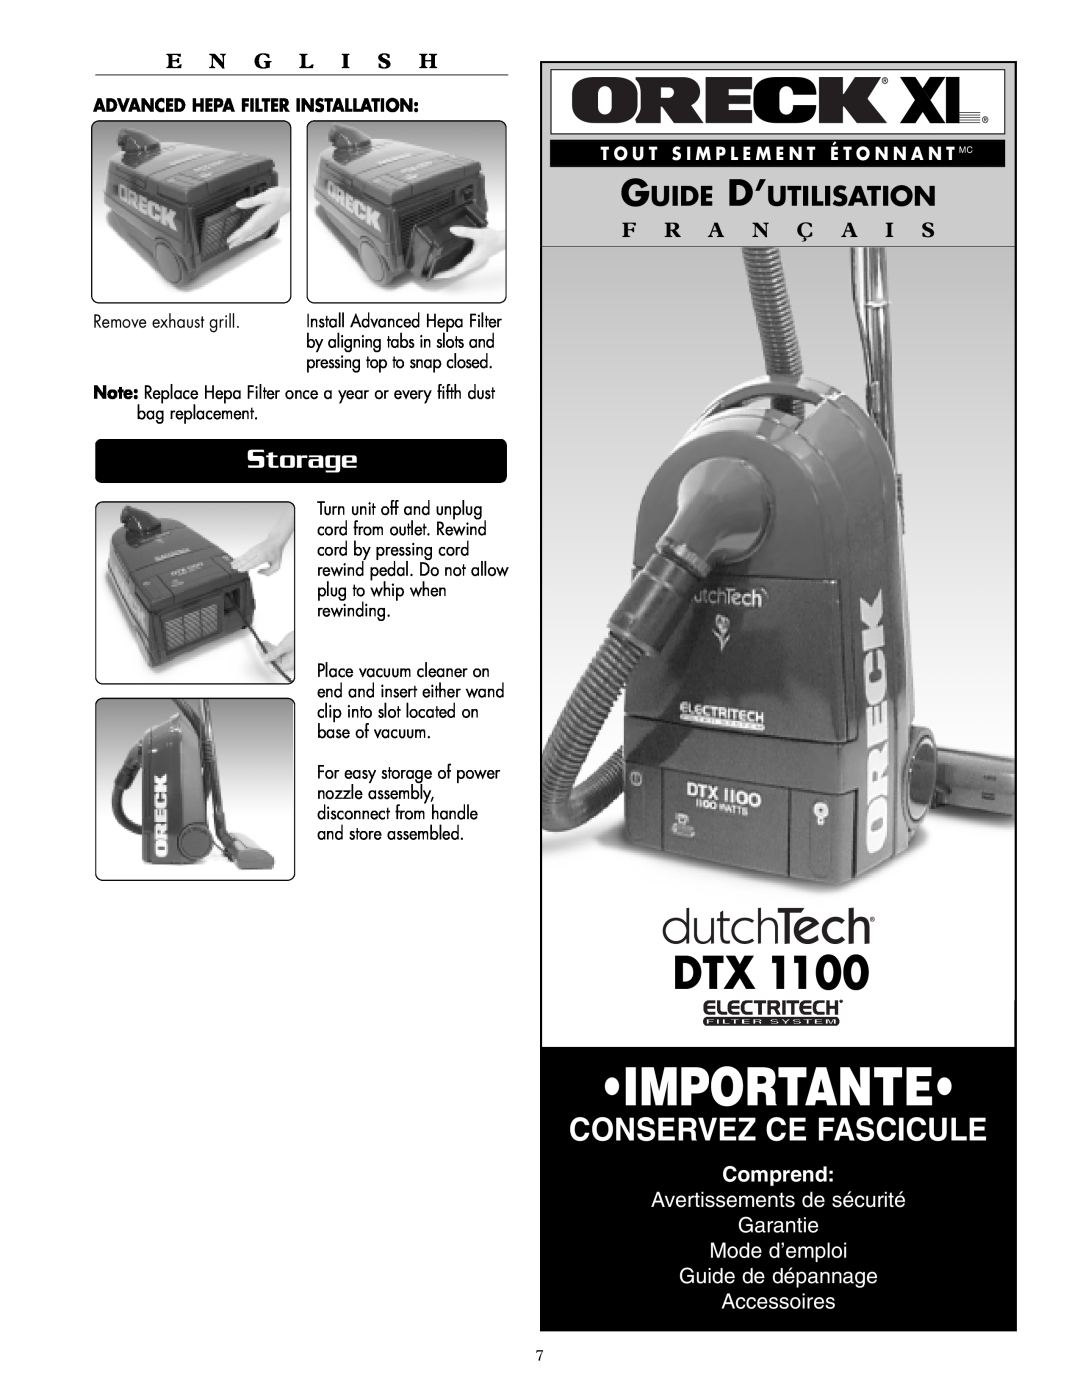 Oreck DTX 1100 Importante, Conservez Ce Fascicule, Storage, Guide D’Utilisation, F R A N Ç A I S, Comprend, E N G L I S H 